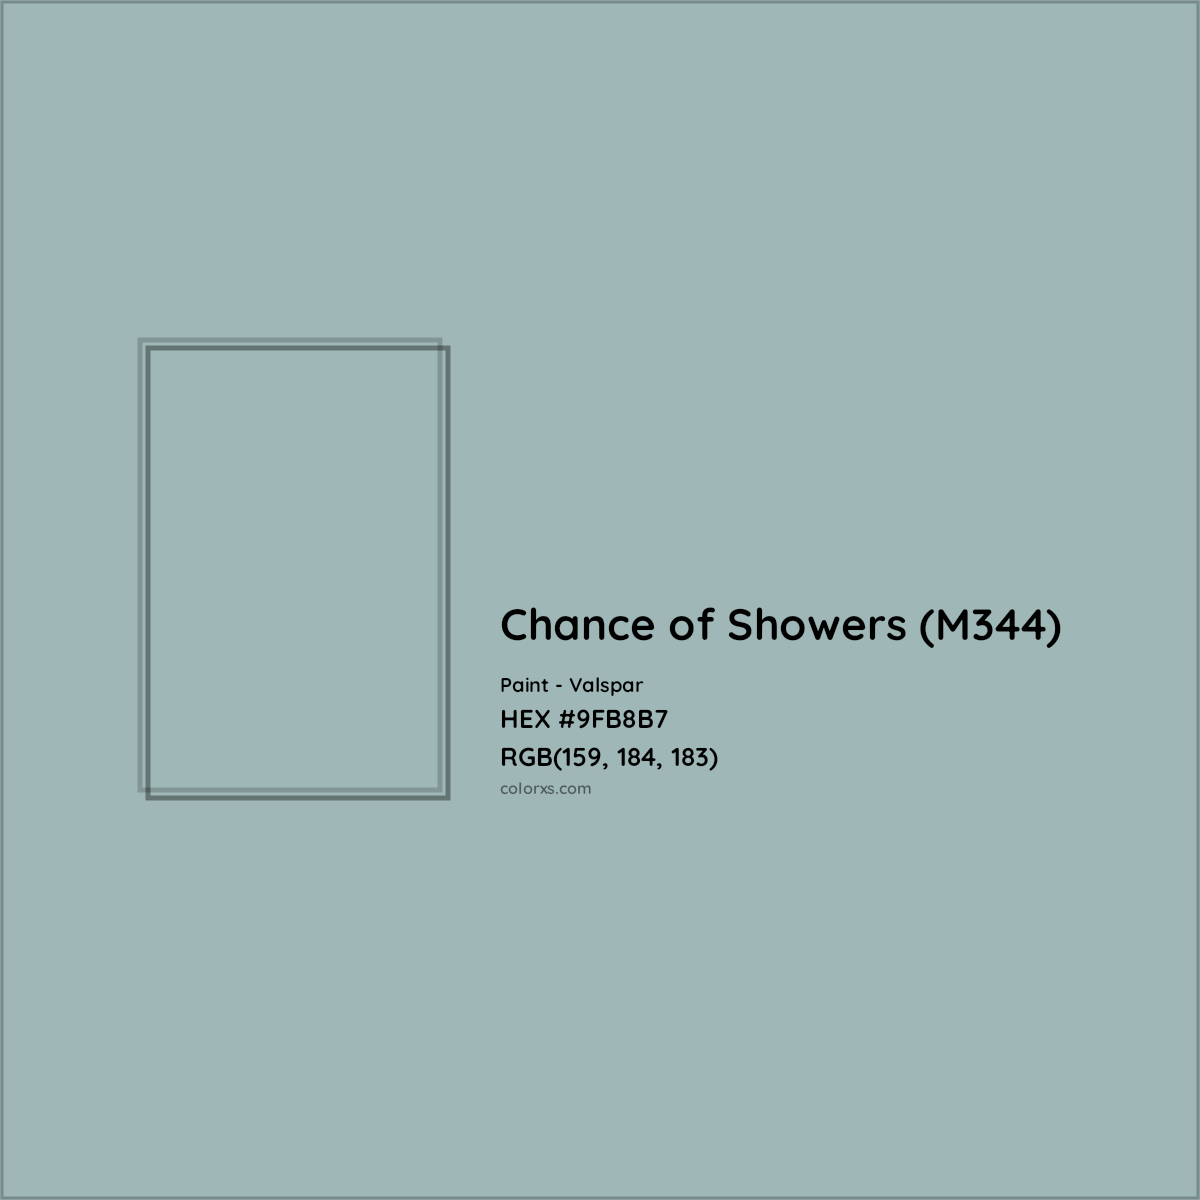 HEX #9FB8B7 Chance of Showers (M344) Paint Valspar - Color Code